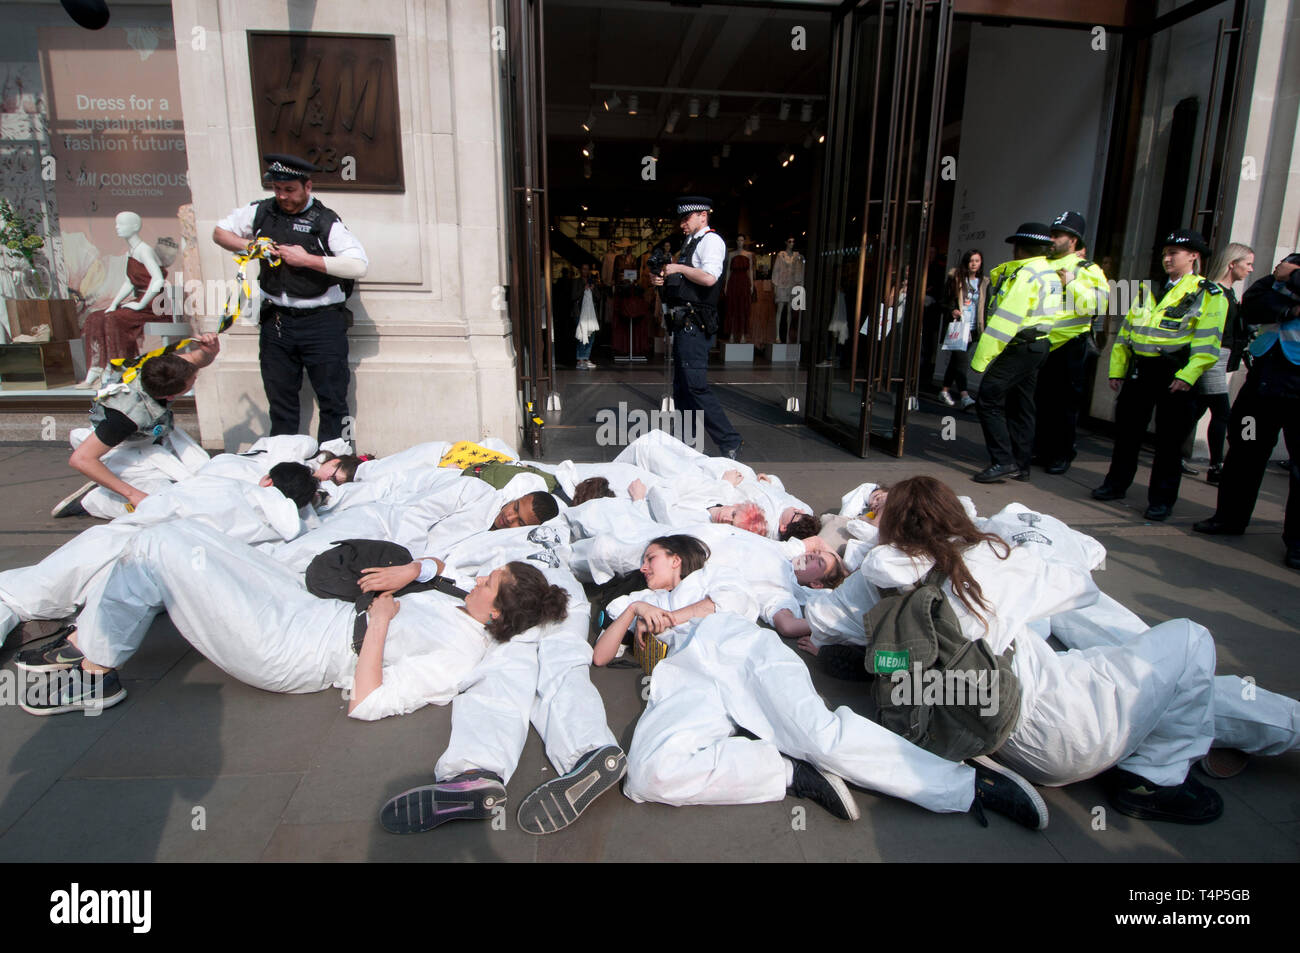 Rébellion Extinction protestation, Londres 17 septembre 2019. Regent Street. Les jeunes meurent dans l'étape de port haz chem suits devant les magasins de dessiner Banque D'Images